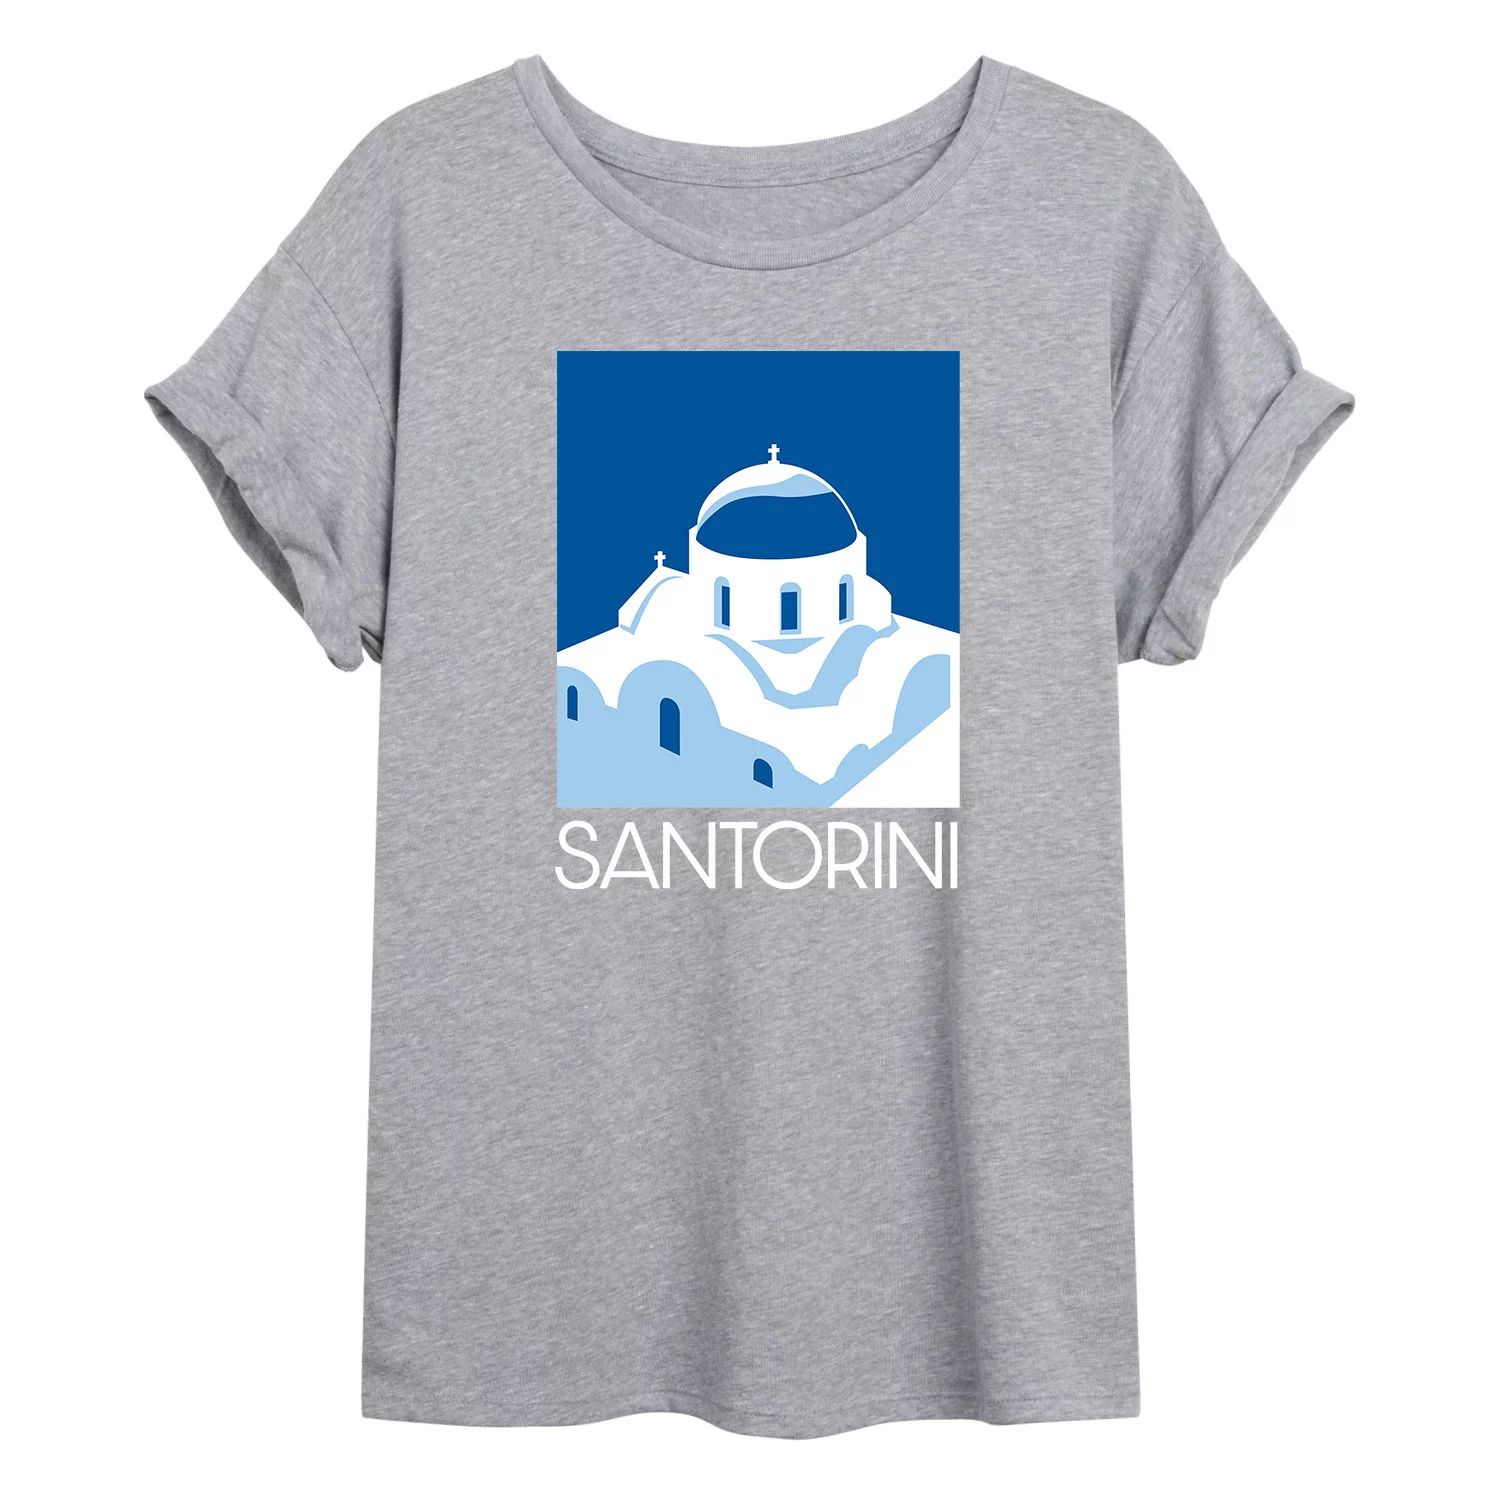 Размерная футболка с рисунком Santorini для юниоров Licensed Character